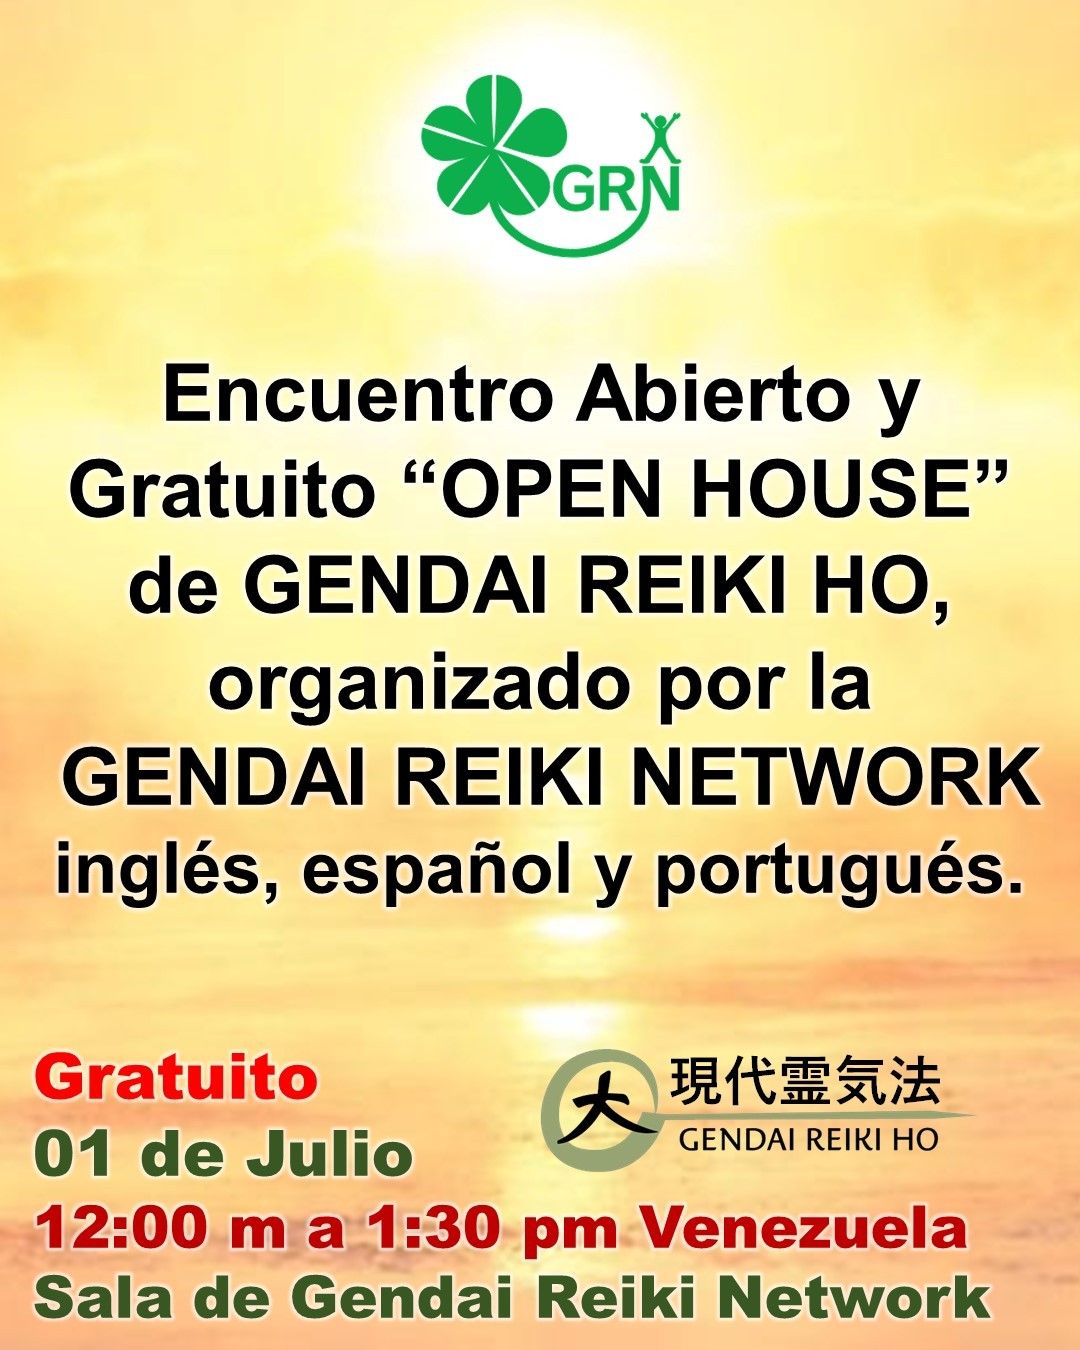 Compañeros de viaje, con mucha alegría y emoción comparto con ustedes que el próximo Sábado 01 de JULIO, (12:00 m HORA VENEZUELA), se realizará un encuentro de Gendai Reiki Network  abierto, OPEN HOUSE a todos los practicantes de Gendai Reiki Ho, en idioma Inglés, Español y Portugués.Es abierto a todos los practicantes de Gendai Reiki Ho, no solo a los socios de GRN, y puedes invitar a tus alumnos, amigos, familiares, compañeros, etc. Será espectacular practicar con muchos practicantes de todo el mundo y disfrutar de esa energía elevada. Bienvenidos todos los que deseen participar.Los detalles del Encuentro Abierto y GratuitoPuedes pasar libremente este enlace a cualquier practicante de Gendai Reiki Ho. Incluso puedes poner en tus redes sociales. Organizador: GENDAI REIKI NETWORKFecha: sábado 1 de julioHora：09:00-10:30 US PDT/MST10:00-11:30 US MDT, México11:00-12:30 US CDT, Panamá, Peru12:00-13:30 US EDT, Toronto, Chile,  Miami, VENEZUELA13:00-14:30 Sao Paulo, Buenos Aires18:00-19:30 Spain, France, Germany, ItalyPrograma: 1. Circulo de reiki2. Chakra Kassei Kokyu Ho (Técnica respiratoria para reactivar los chakras) 3. Ducha de reiki4. Autotratamiento 5. Oración por la paz universal Enlace de Acceso:https://us02web.zoom.us/j/87997119545Meeting ID: 879 9711 9545Contraseña : 123456Plataforma: ZoomSolo pedimos a todos los participantes que pongan la cámara activada, y poner el NOMBRE Y PAÍS.Será una oportunidad maravillosa de compartir directamente con los miembros de la Gendai Reiki Network y otros compañeros a nivel internacional.Por supuesto yo estare presente y Casa Reiki y Salud, abrirá sus puertas en Maracaibo, para aquellos practicante de Gendai Reiki Ho, que no tengan acceso a internet.Bienvenidos todos a esta fiesta de Gendai Reiki Ho a nivel InternacionalNos vemos el próximo 1 de JulioGendai Reiki Network InternationalEmail: espanol@gendaireiki.networkWeb: www.gendaireikinetwork.netGracias gracias gracias, un gran abrazo de luz, Gassho, @dinopierini@reikisalud #reikivenezuela #reikimaracaibo #gendaireikinetwork #koryukai